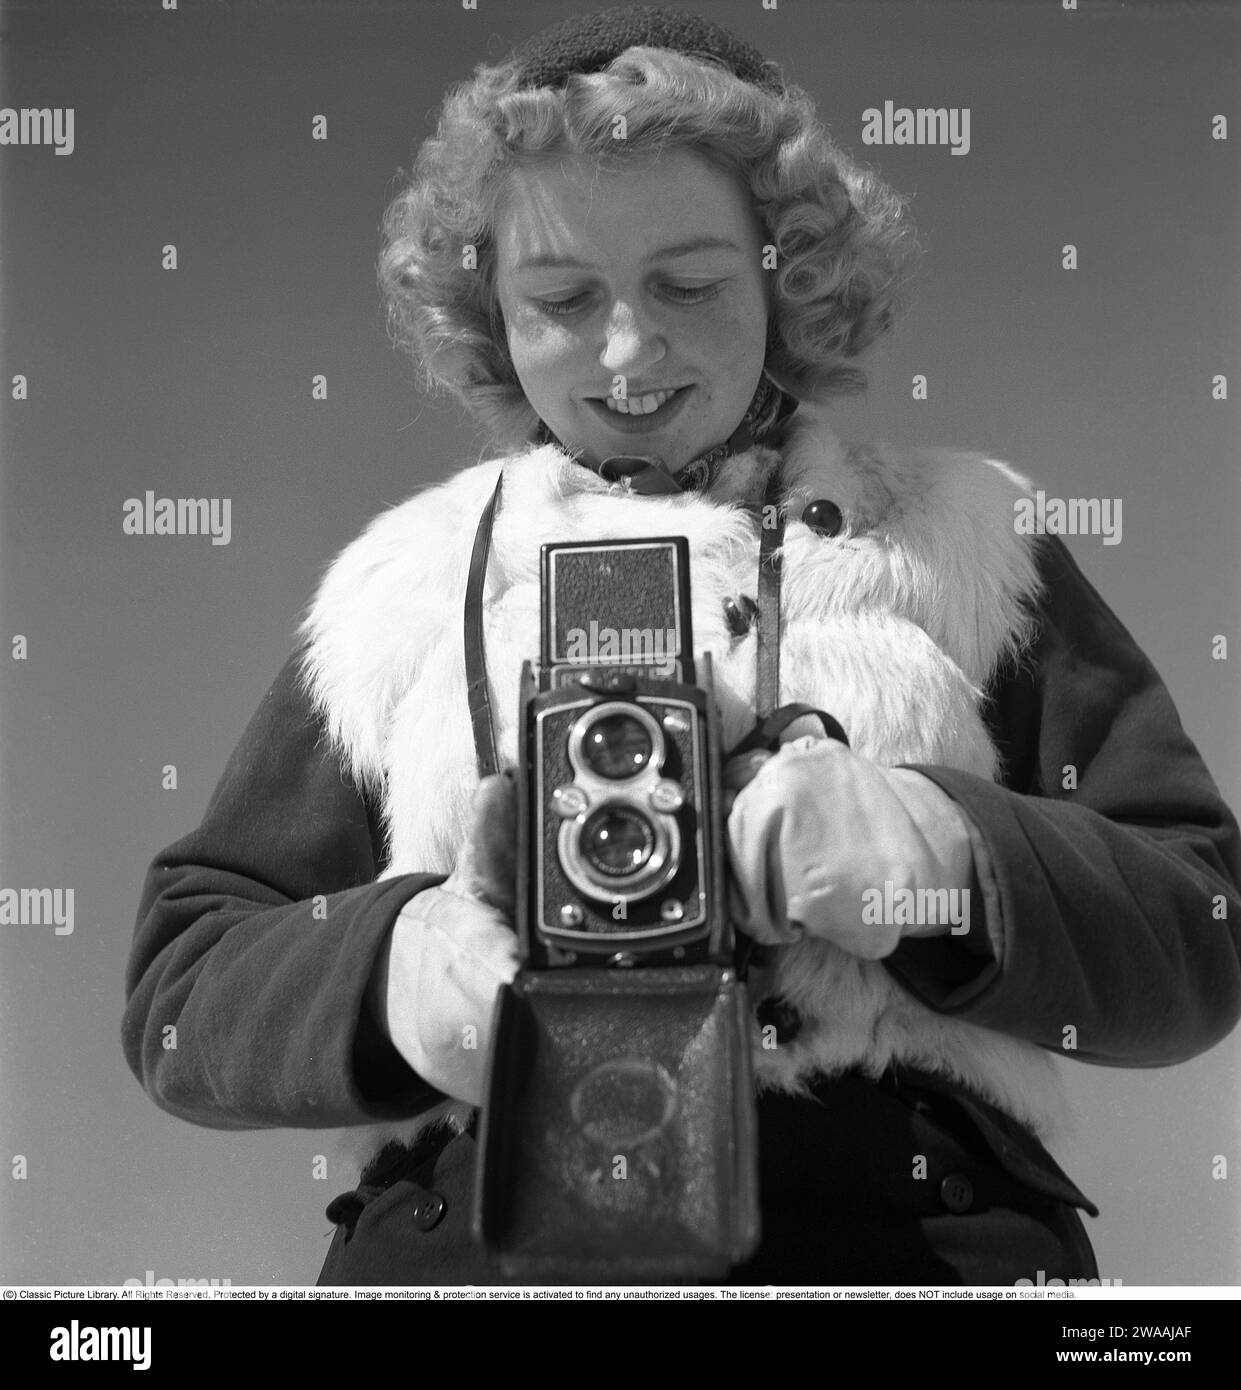 Winter in den 1940er Jahren Eine junge Frau fotografiert an einem Wintertag. Die Kamera ist eine Rolleiflex der deutschen Firma Rollei für 60-mm-Filme. 1944. Foto Kristoffersson Ref. F104-4 Stockfoto